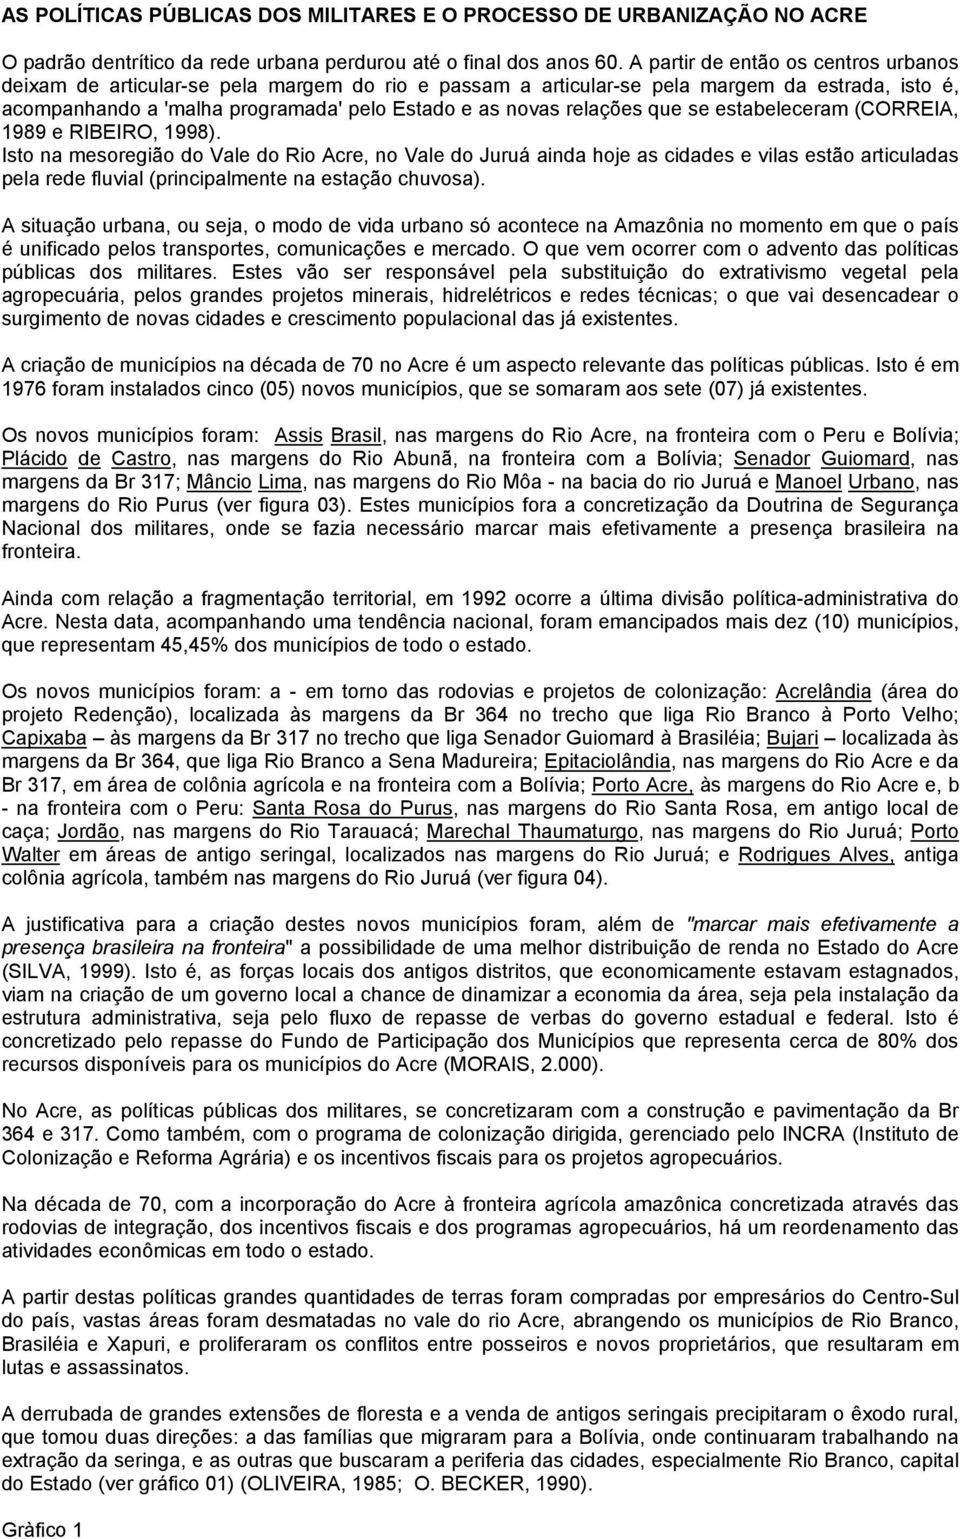 relações que se estabeleceram (CORREIA, 1989 e RIBEIRO, 1998).